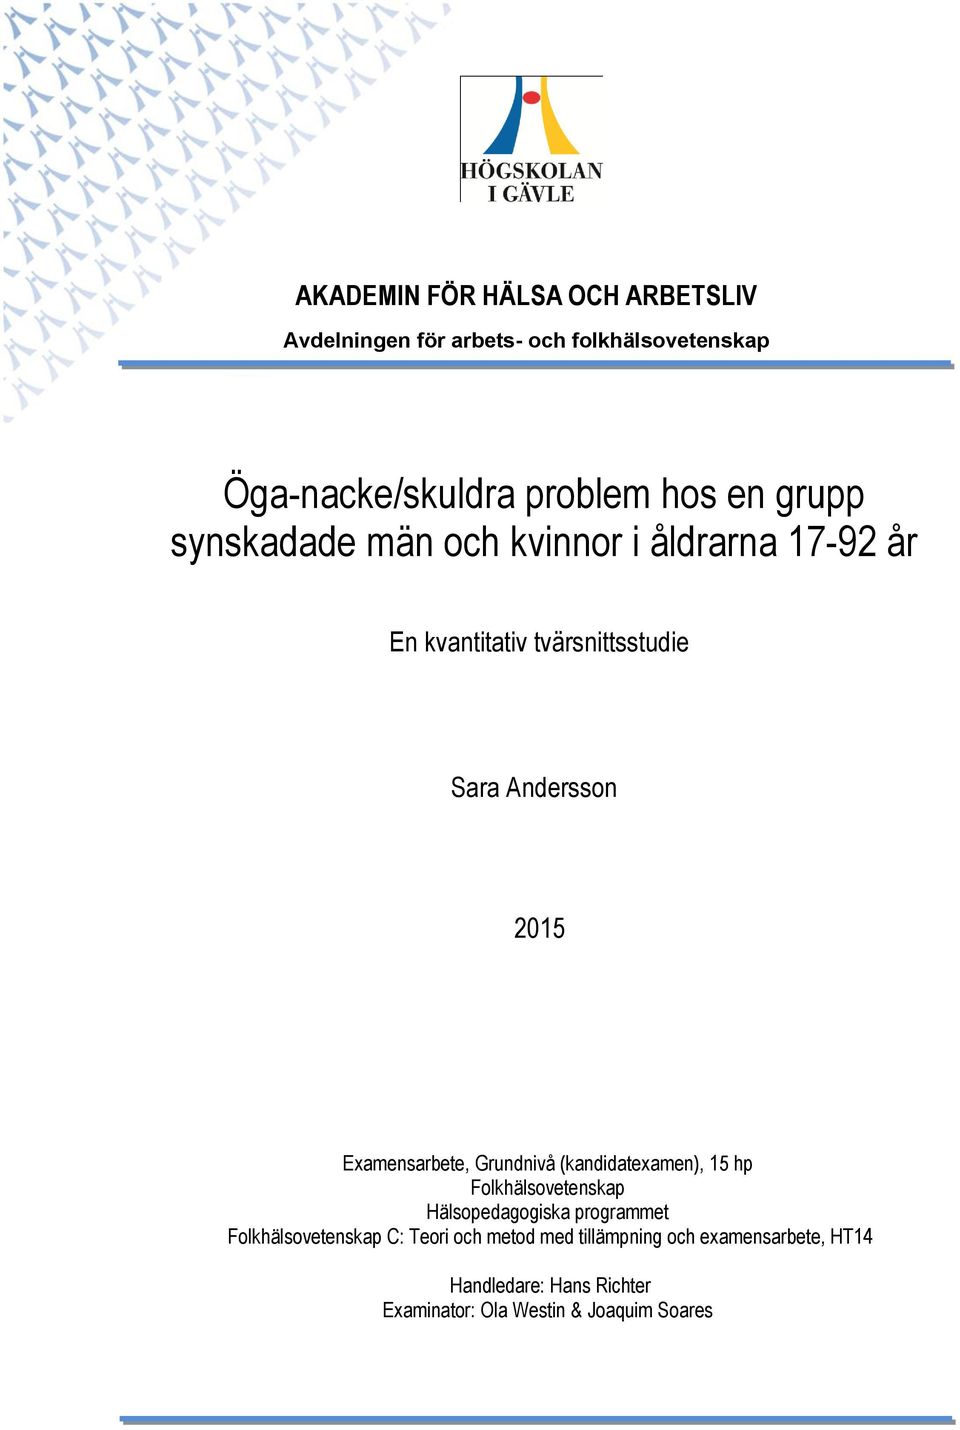 Examensarbete, Grundnivå (kandidatexamen), 15 hp Folkhälsovetenskap Hälsopedagogiska programmet